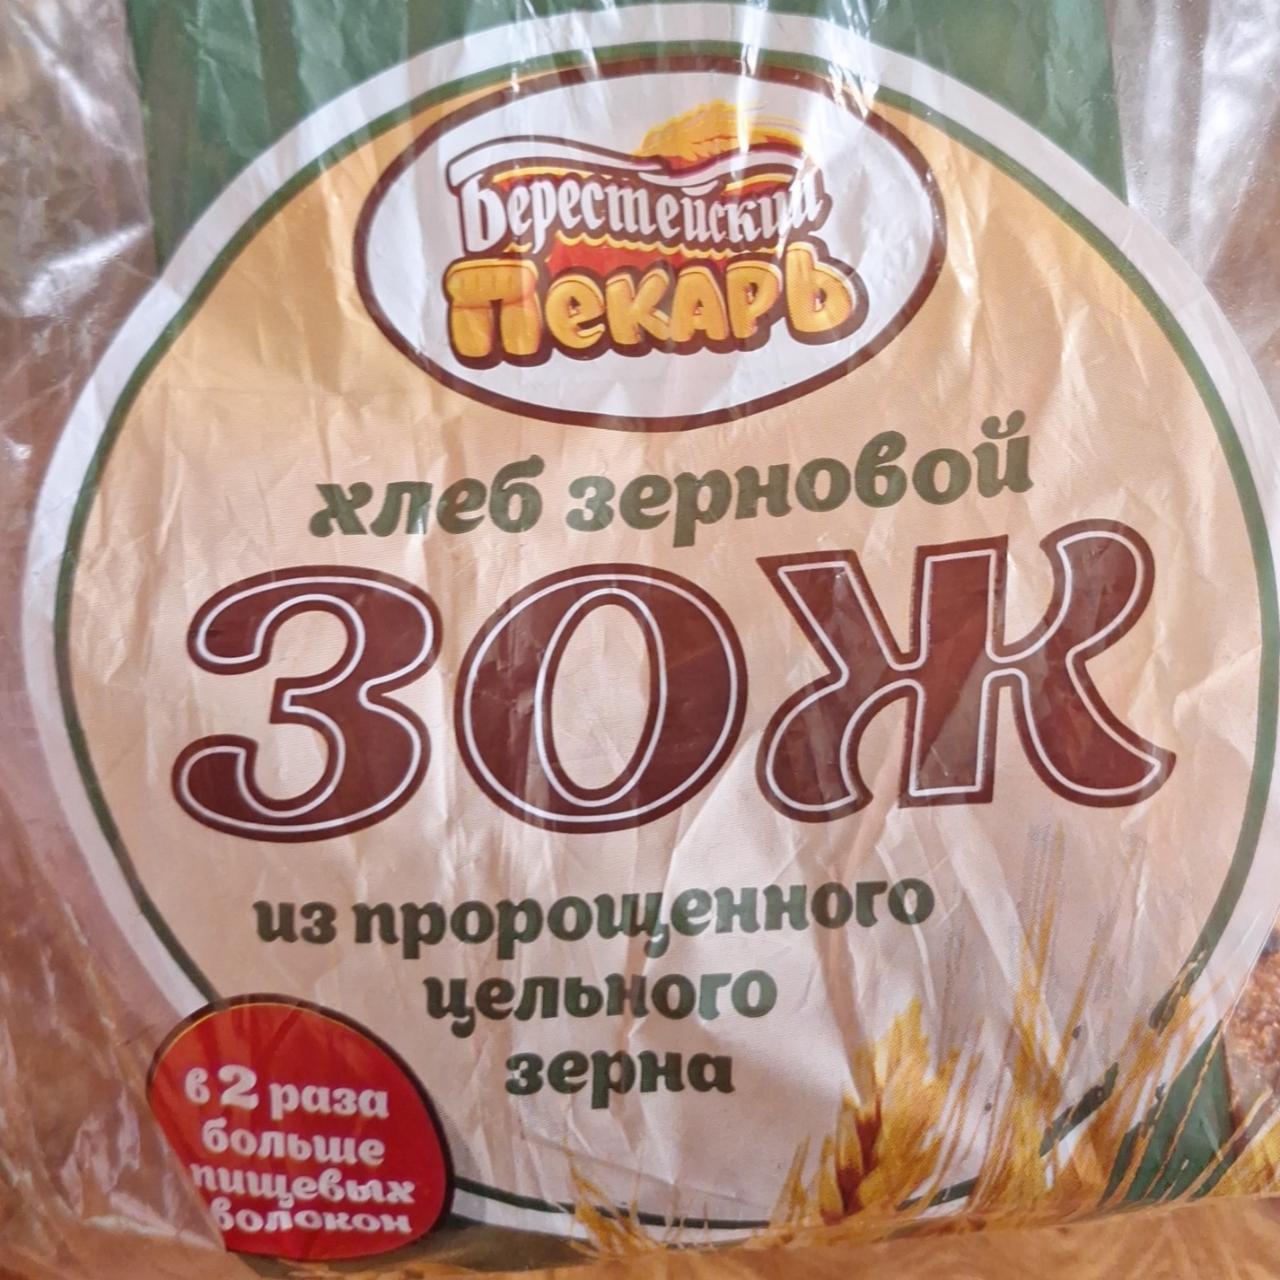 Фото - Хлеб зерновой ЗОЖ из пророщенного цельного зерна Берестейский пекарь